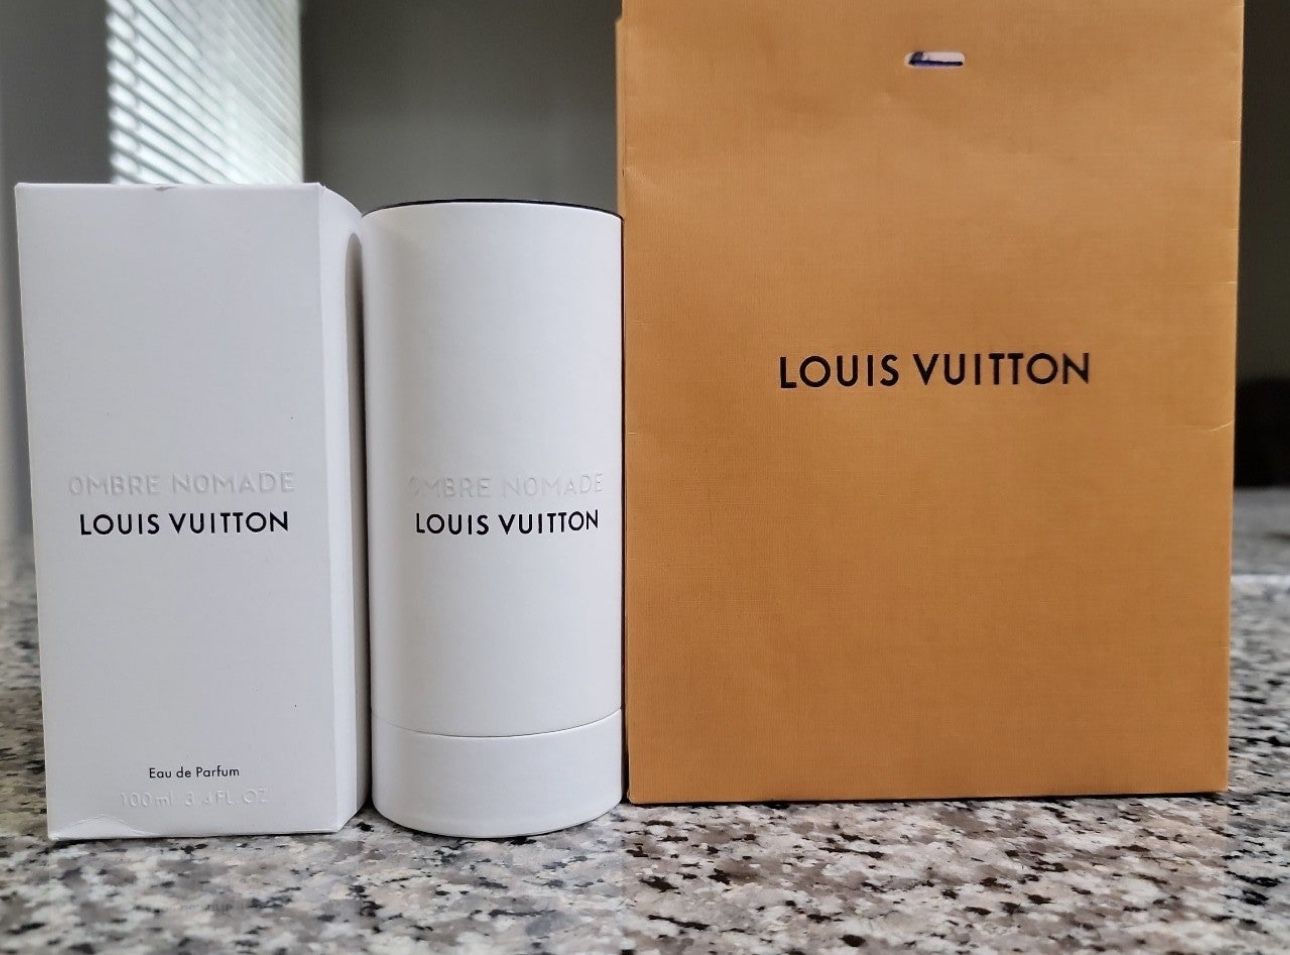 Louis Vuitton Ombre Nomade Eau de Parfum 100ml